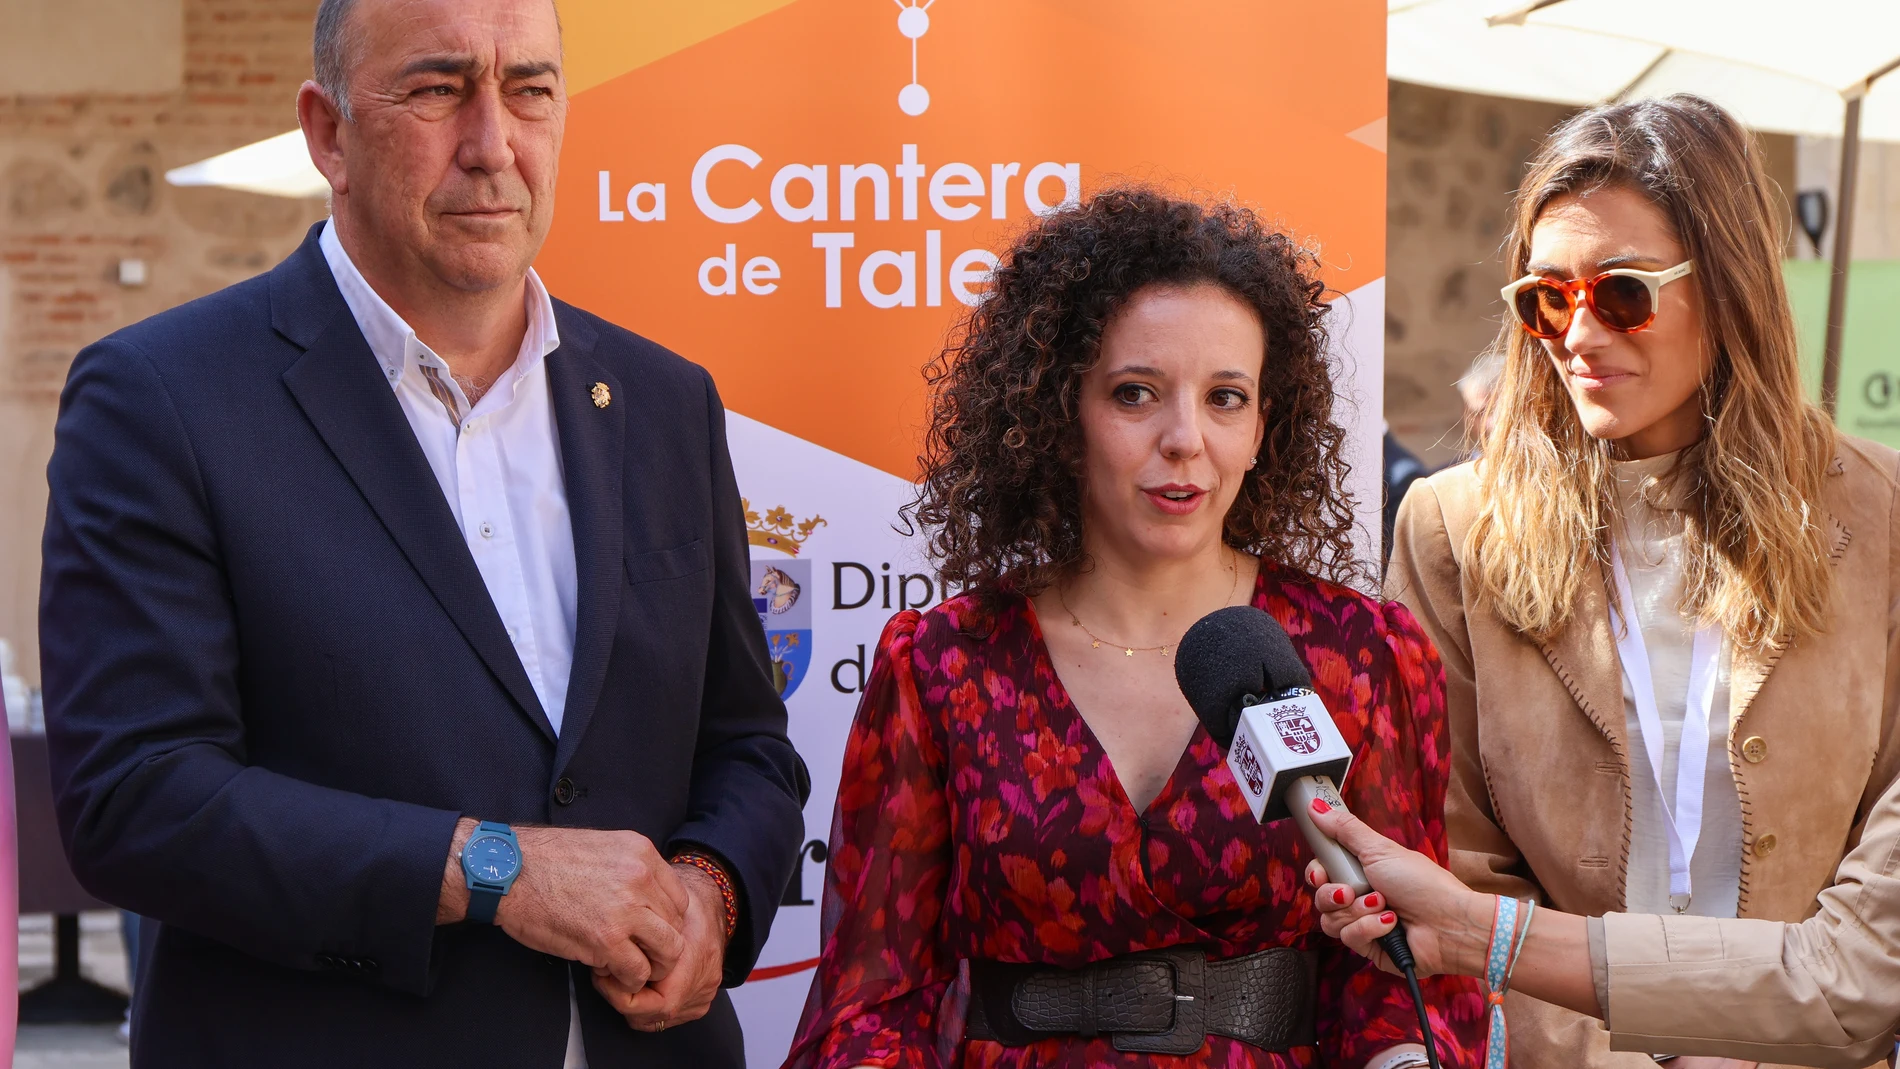 El presidente de la Diputación, Miguel Ángel de Vicente, la diputada Noemí Otero y la presidenta de la Cámara de Segovia, María José Tapia, presentan la iniciativa